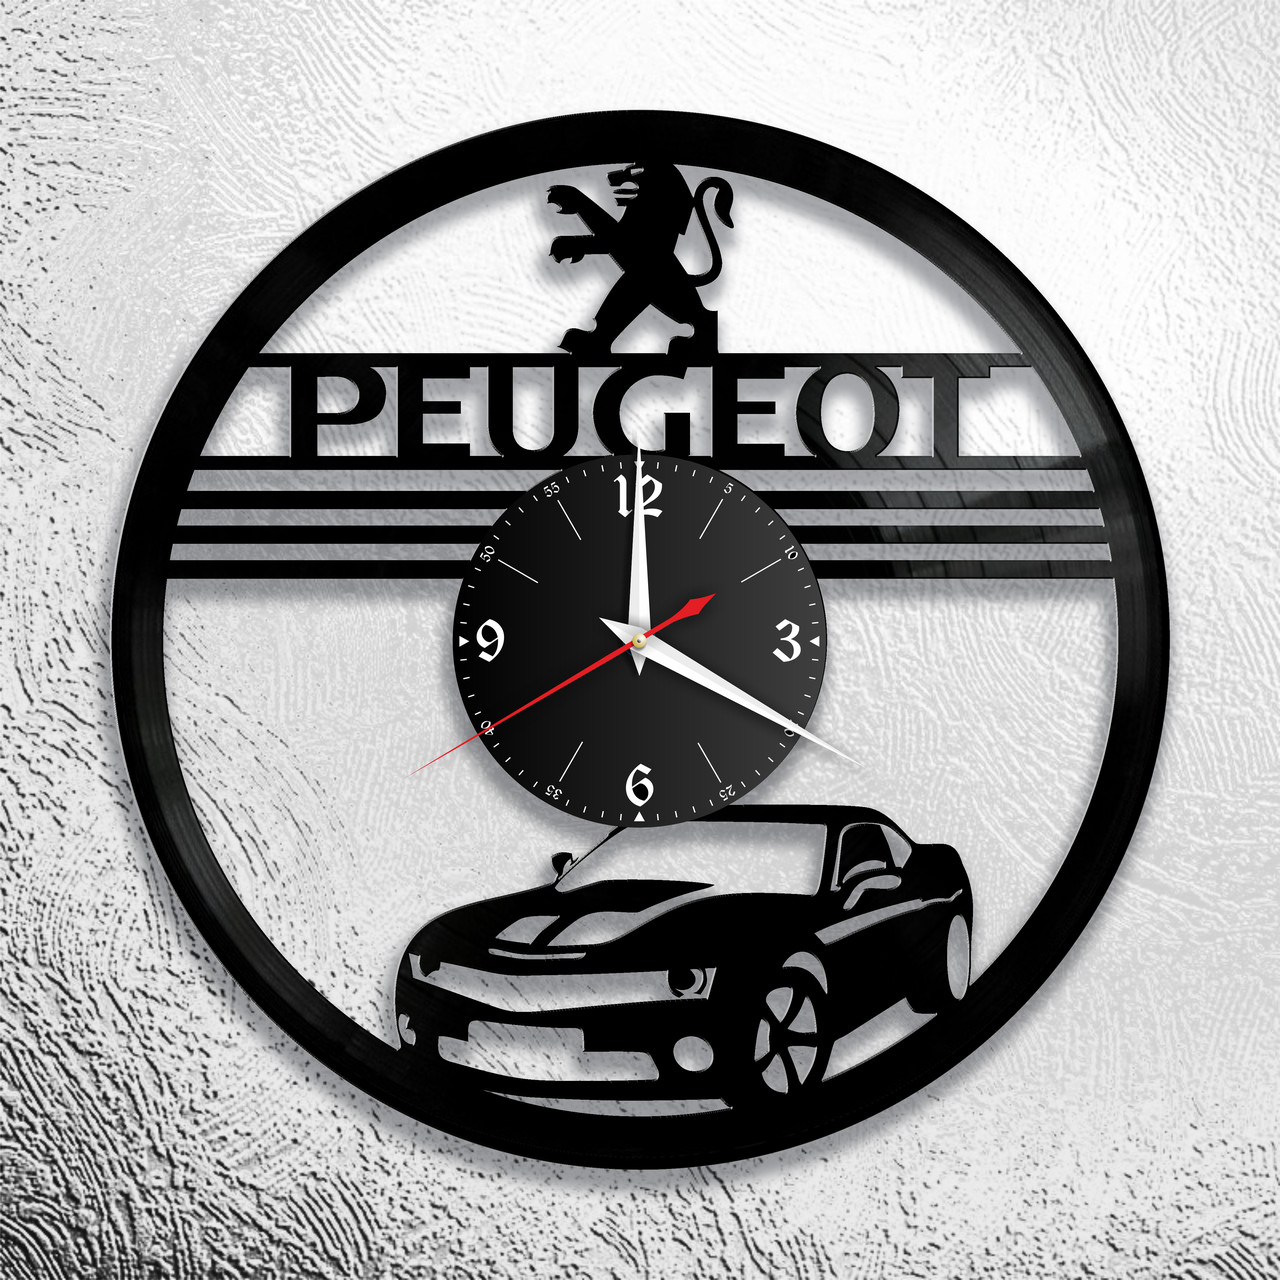 Оригинальные часы из виниловых пластинок  "Peugeot" версия 1, фото 1